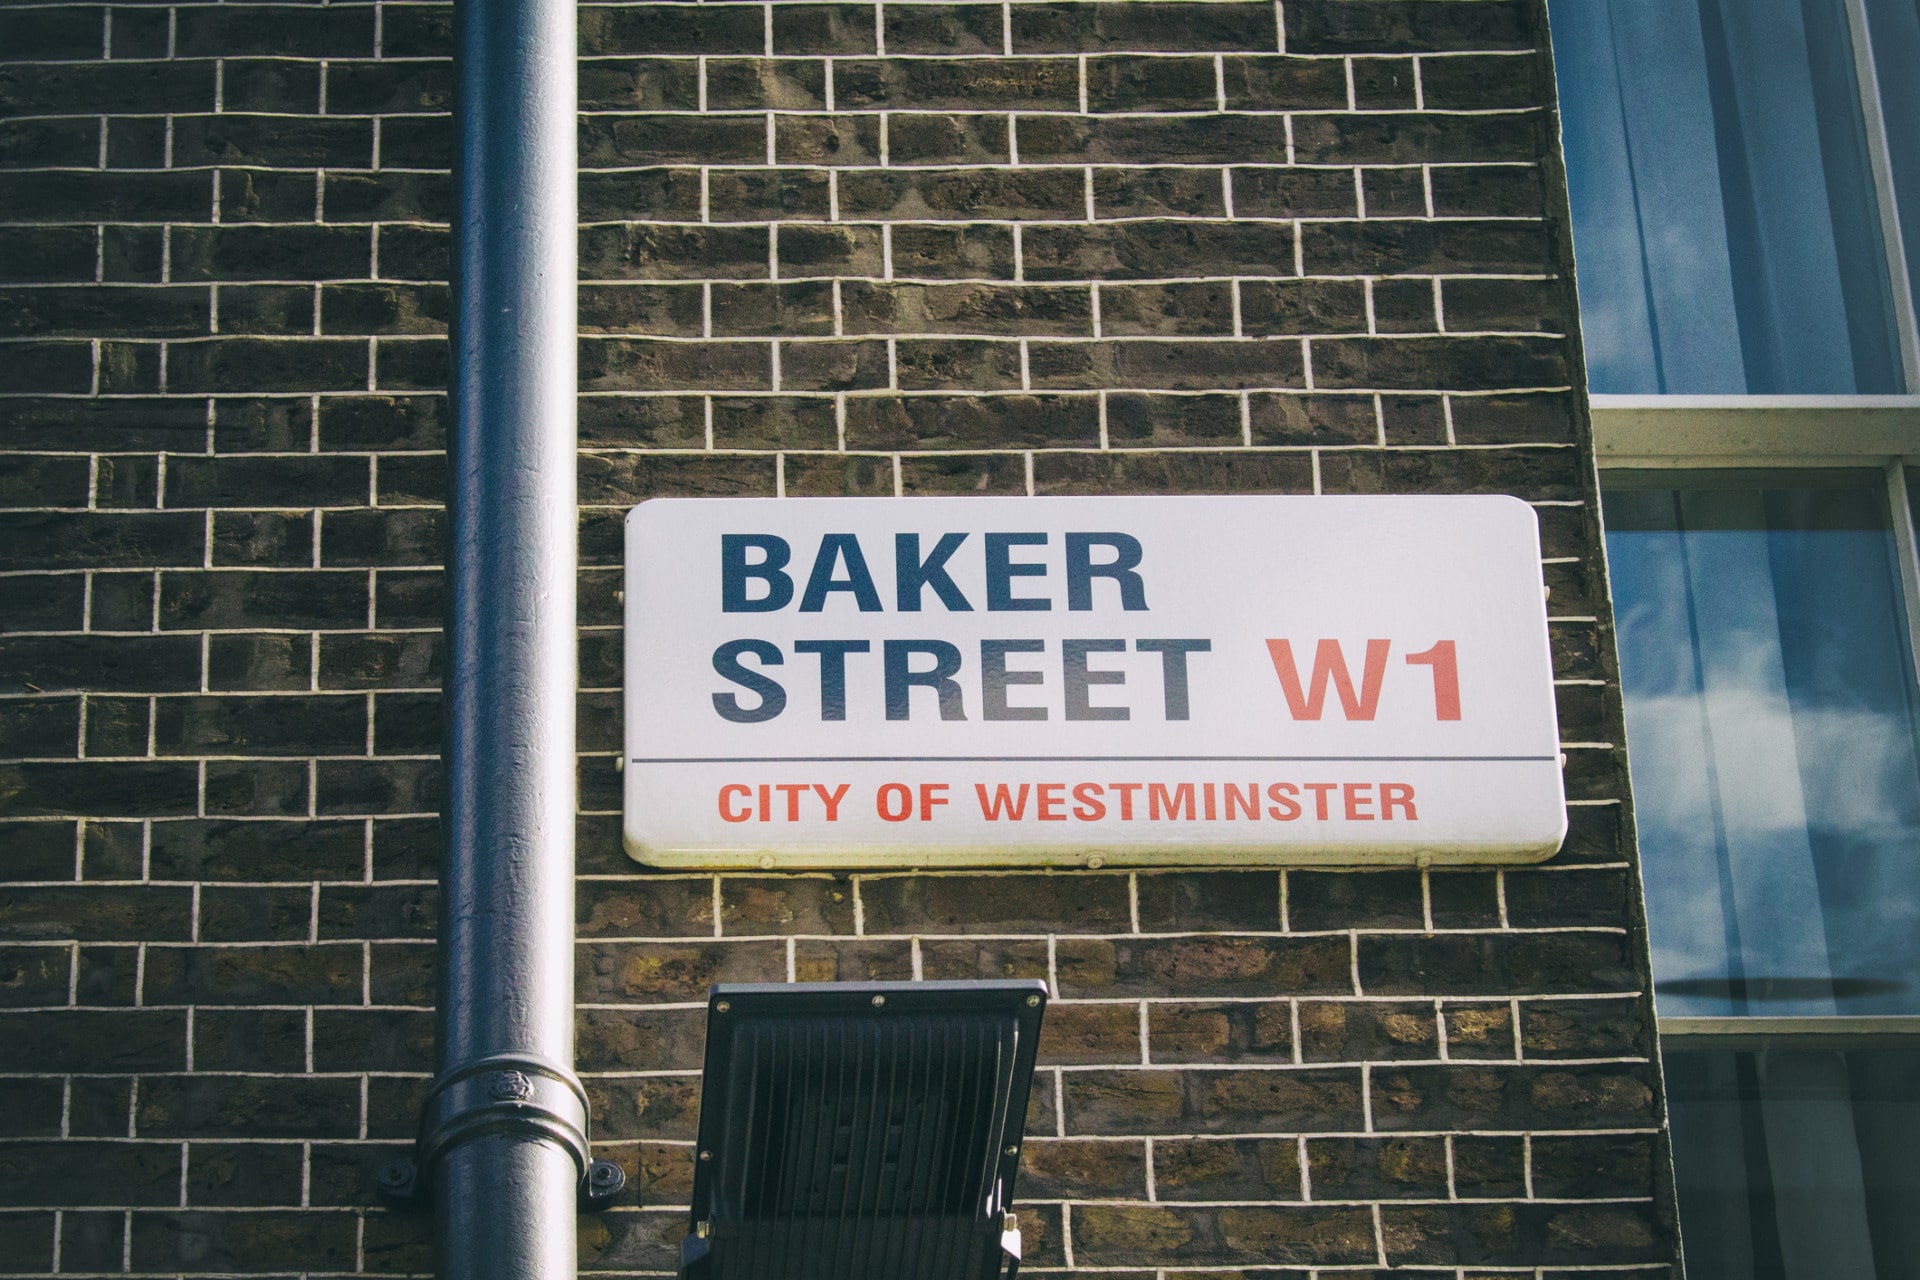 Castello Baker Street W1 City of Westminster